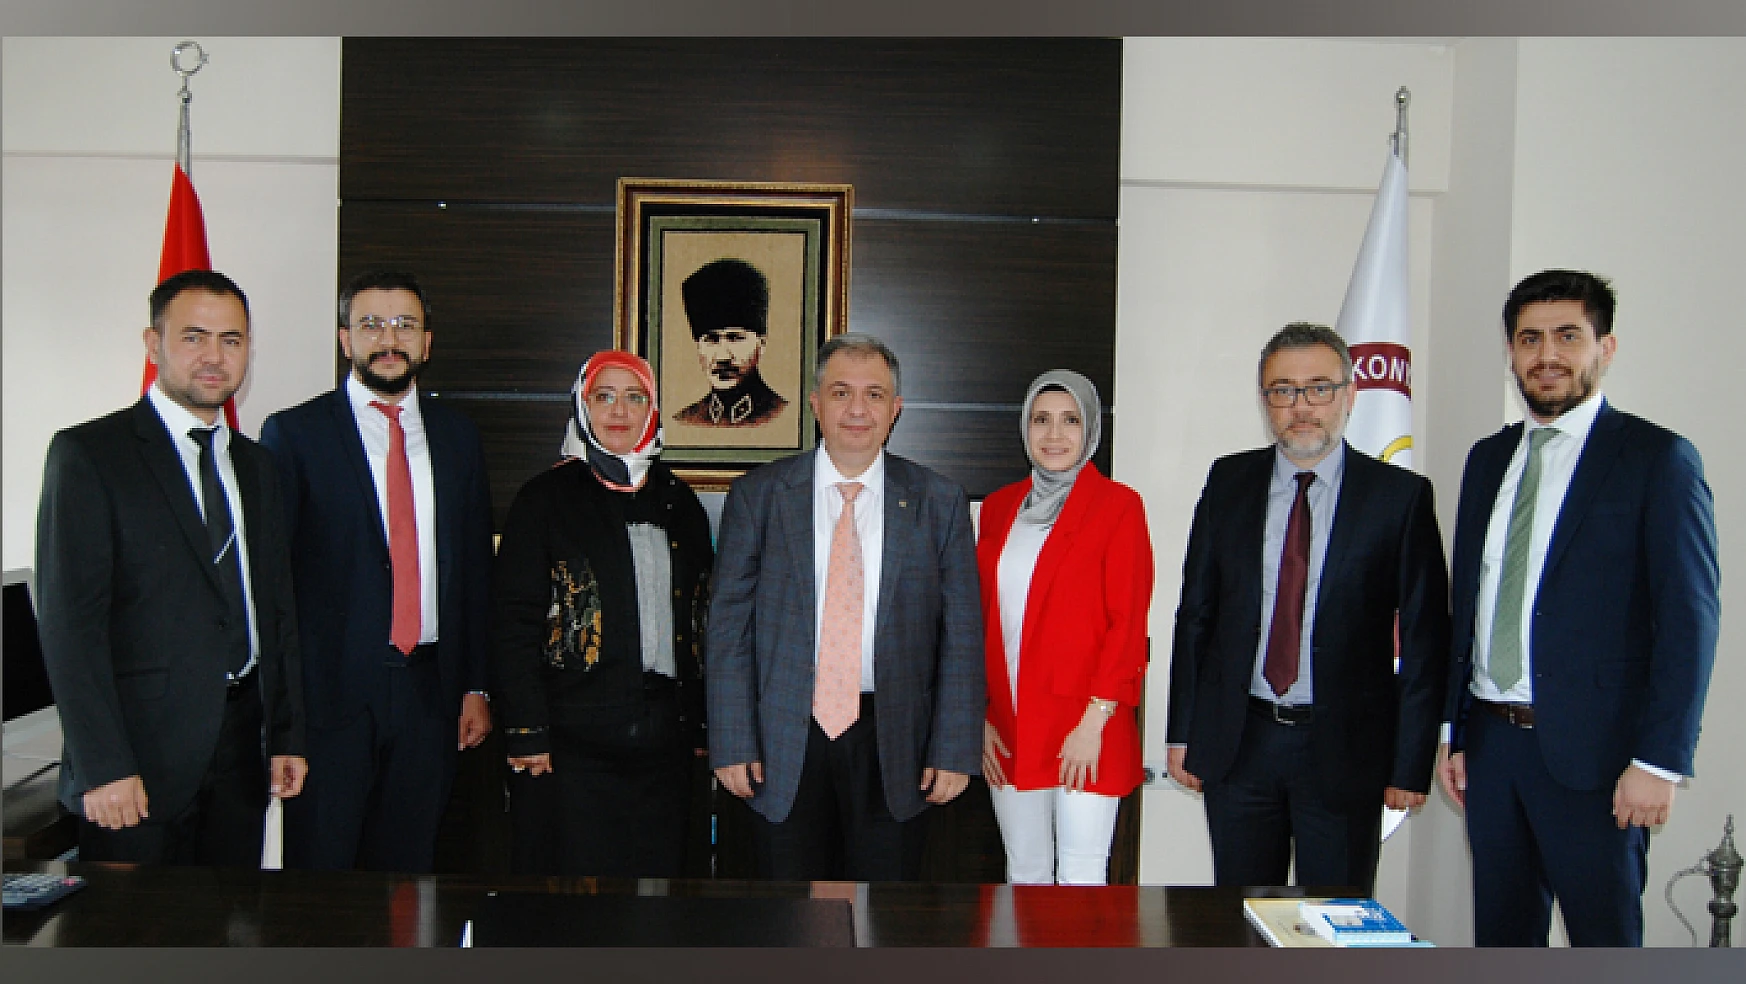 Eczacılar, 16 Ekim'de Ankara'da Büyük Eczacı Mitinginde buluşacak